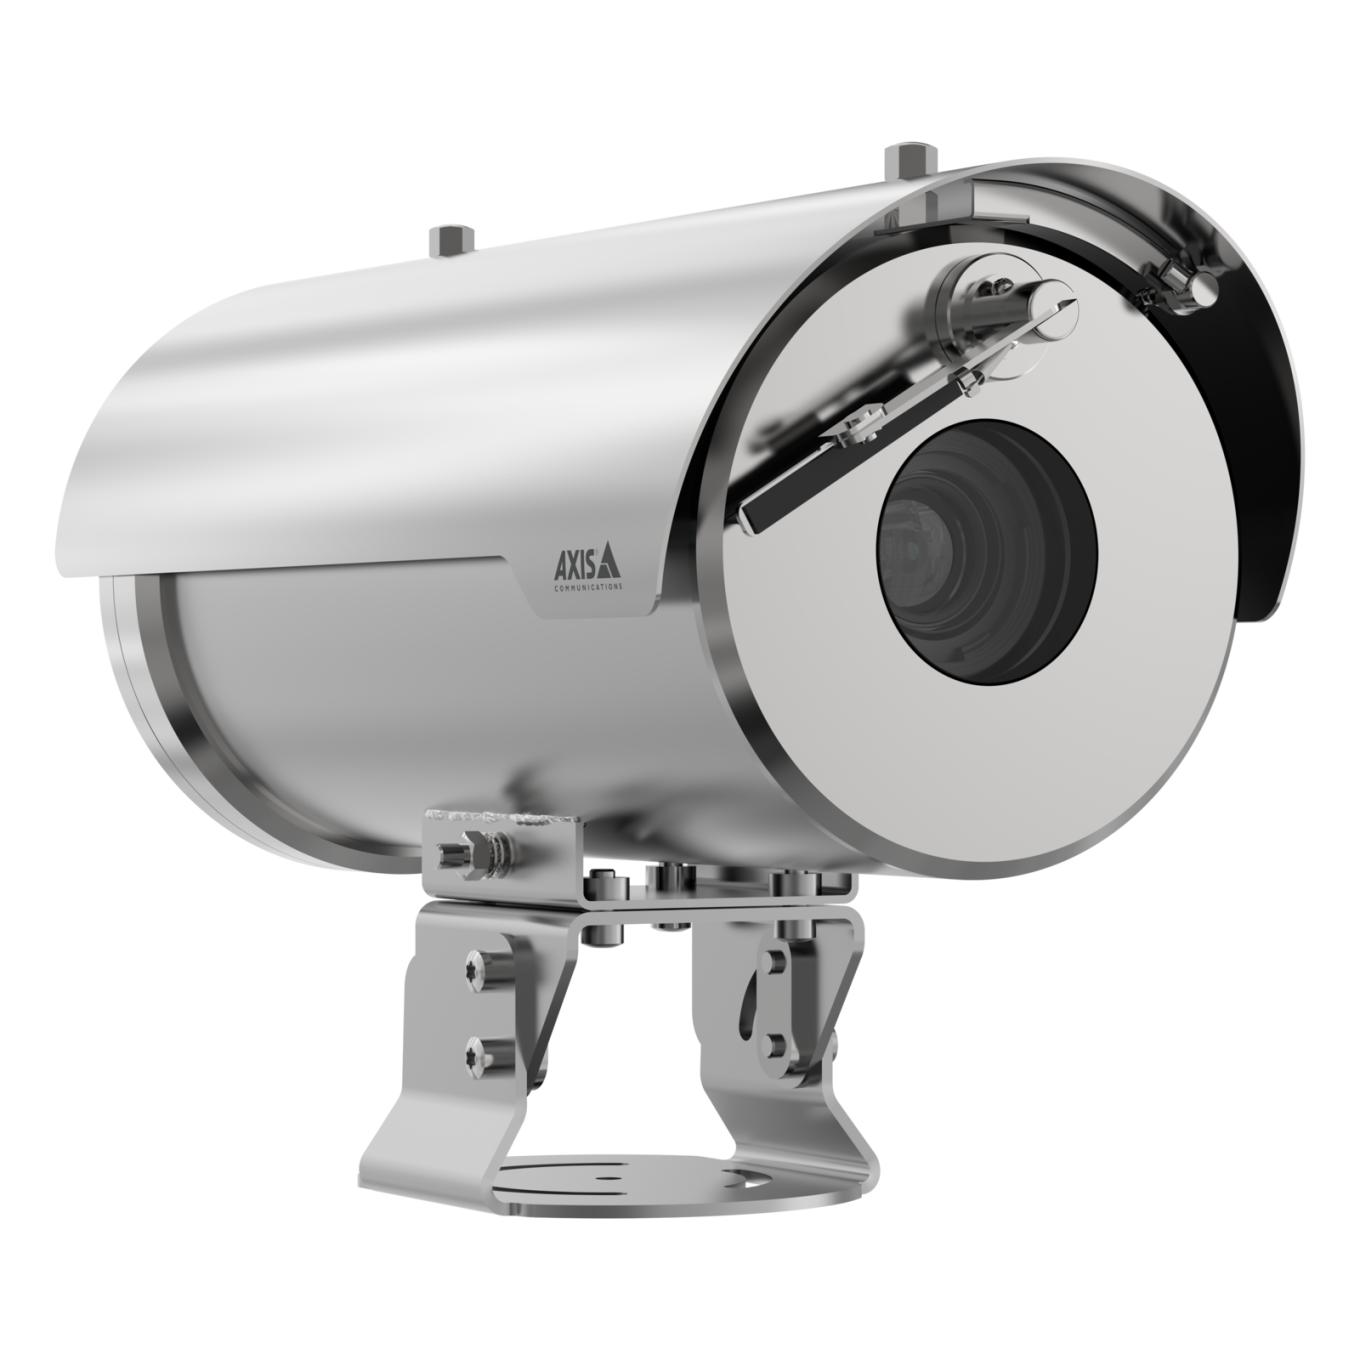 Caméra couleur argent AXIS XFQ1656, vue de son angle droit.